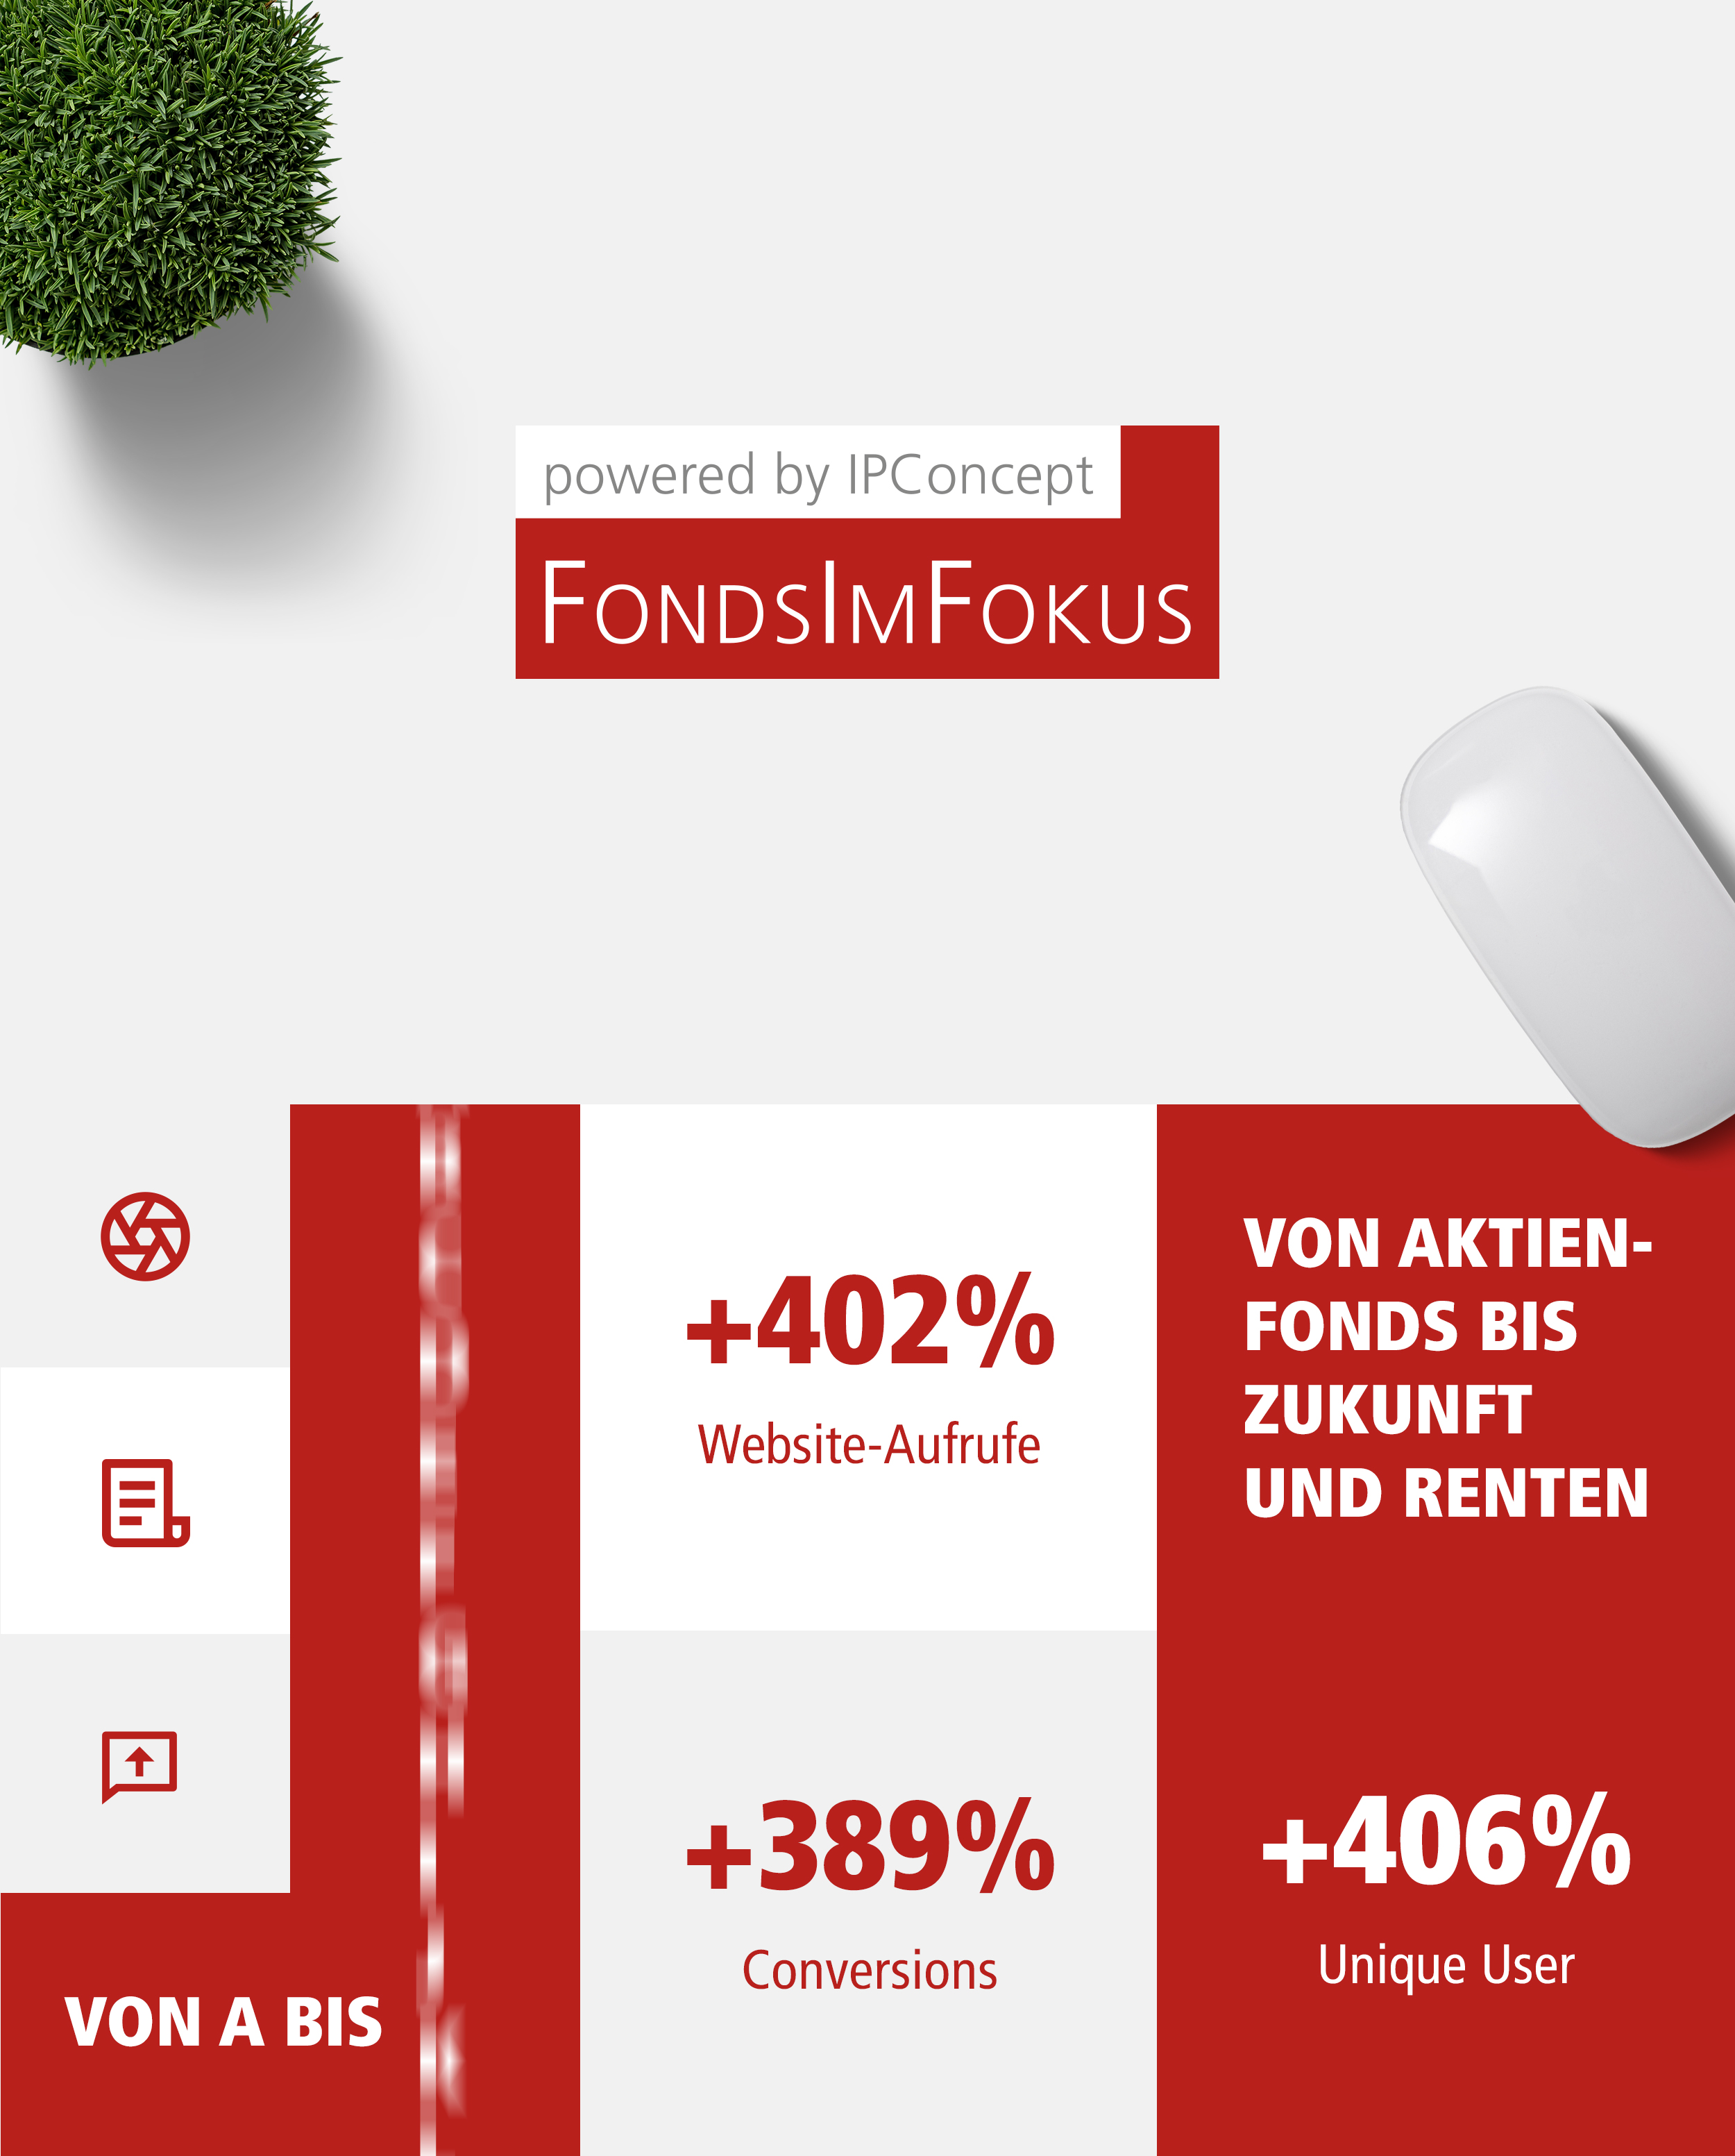 genokom Werbeagentur GmbH Fonds im Fokus 1 Strategie Konzept Design Media Live Marken